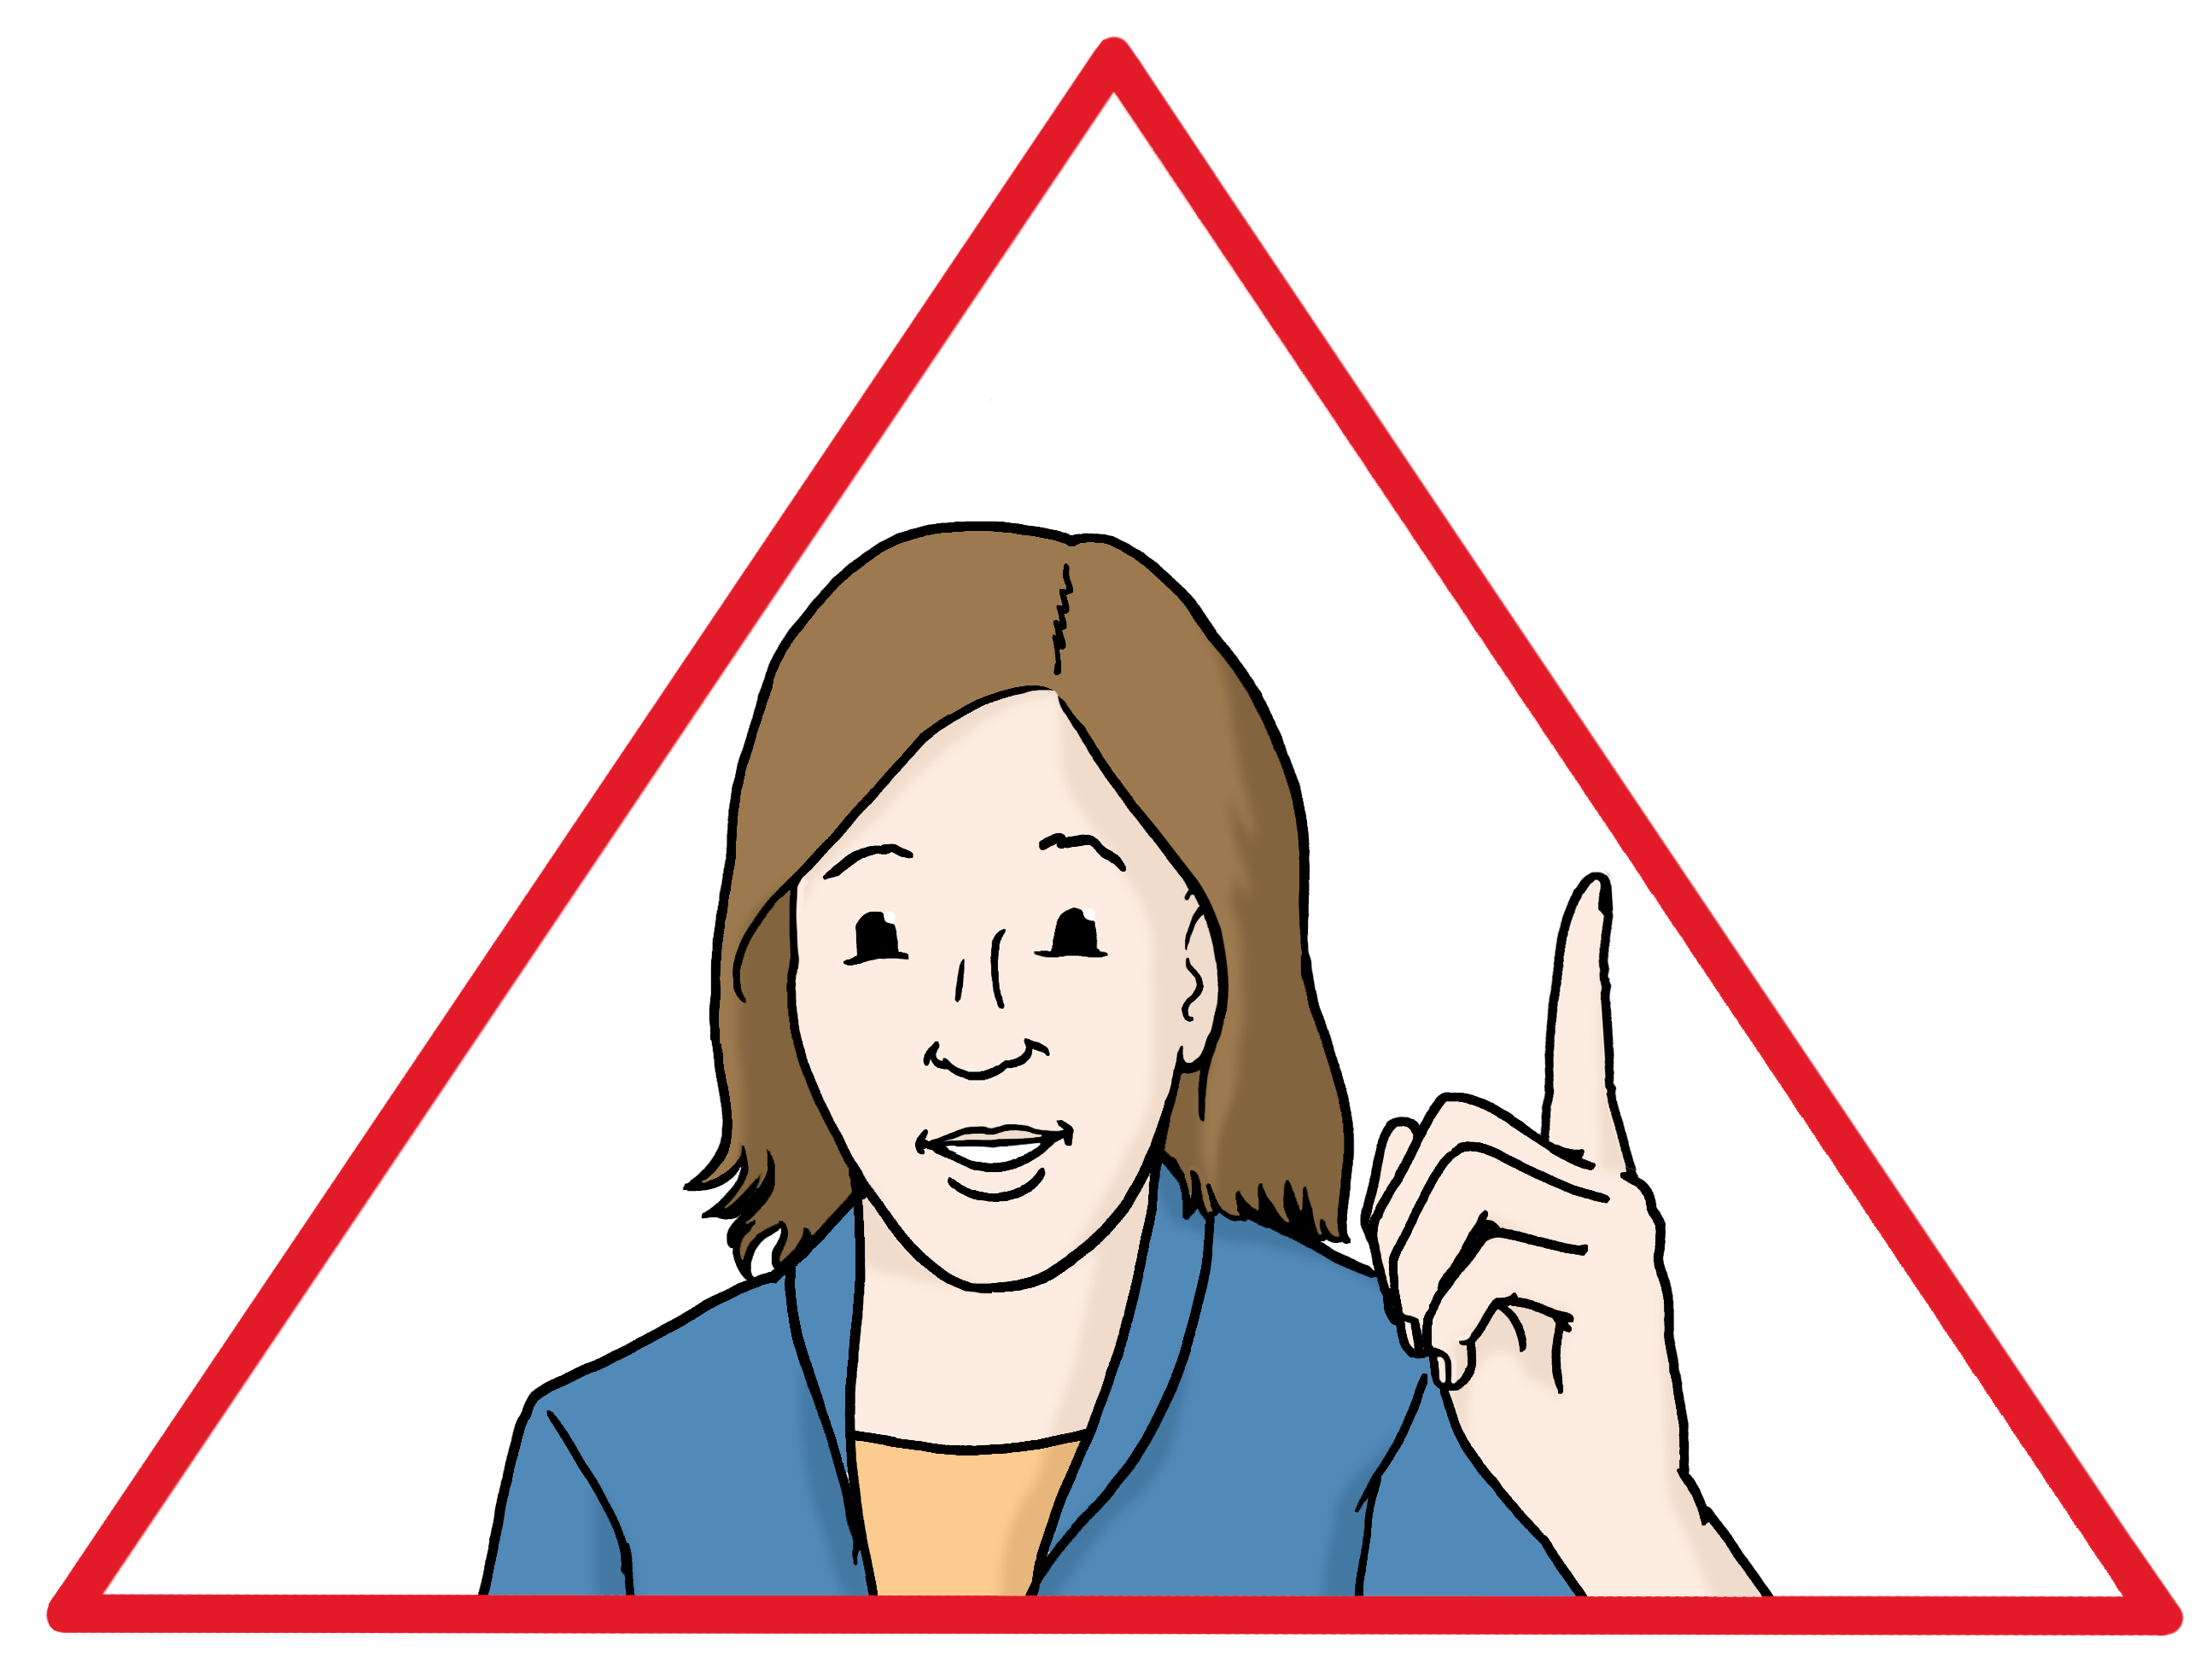 Eine Frau abgebildet in einem roten Dreieck, warnend mit erhobenen Zeigefinger.